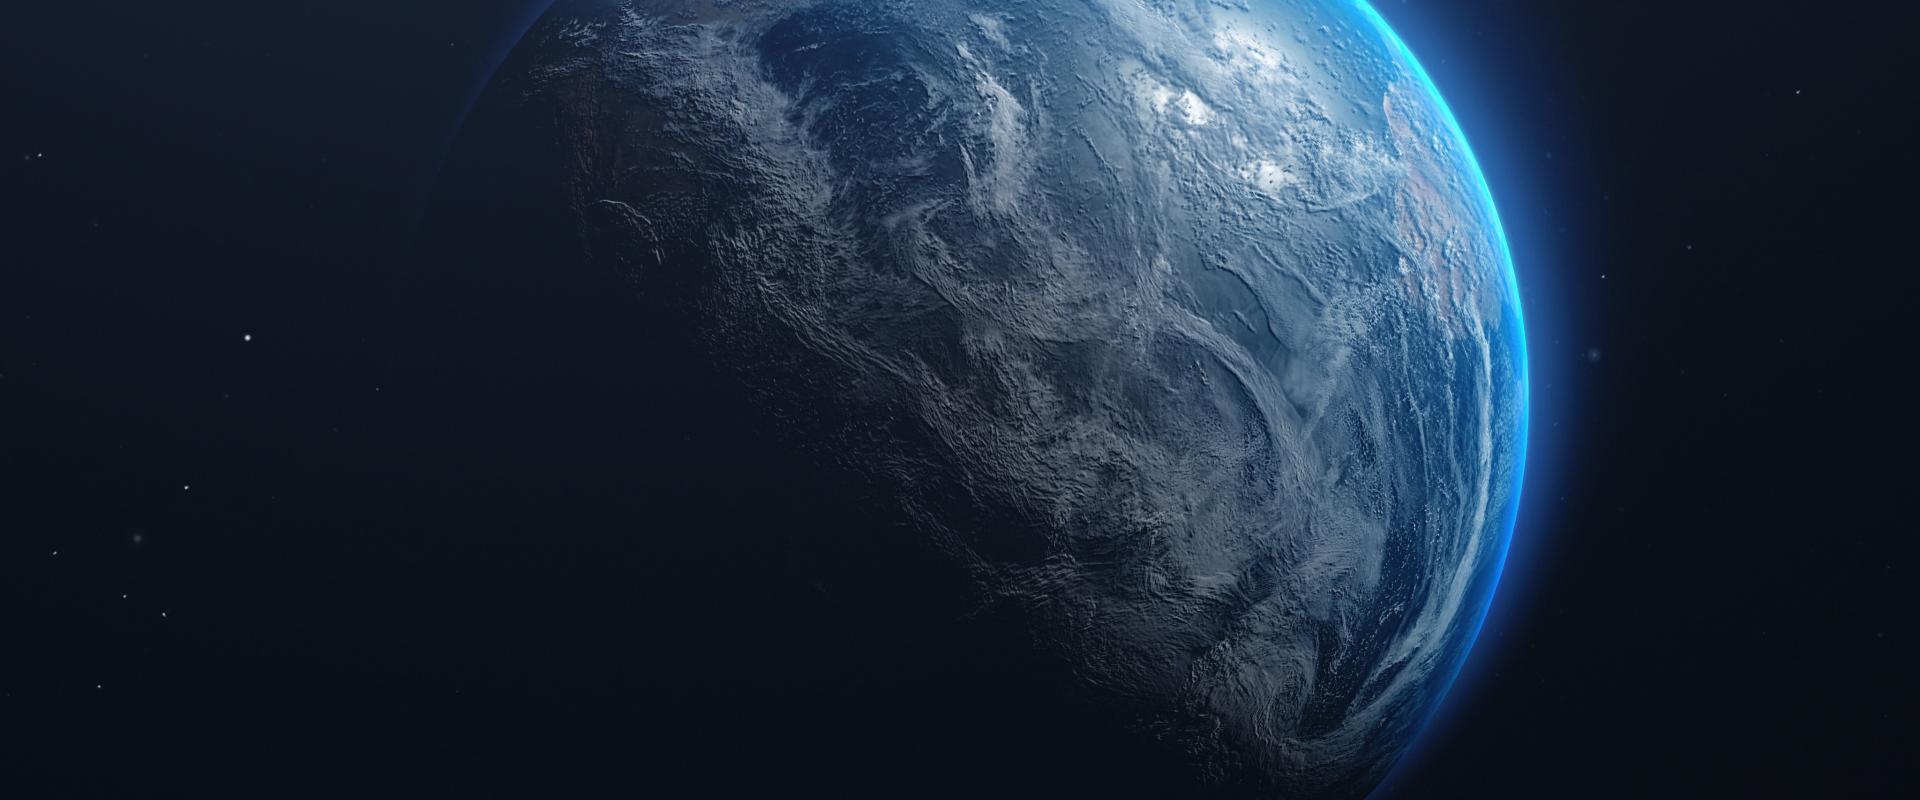 Photo de la planète Terre vue de l'espace, entourée d'un halo bleuté